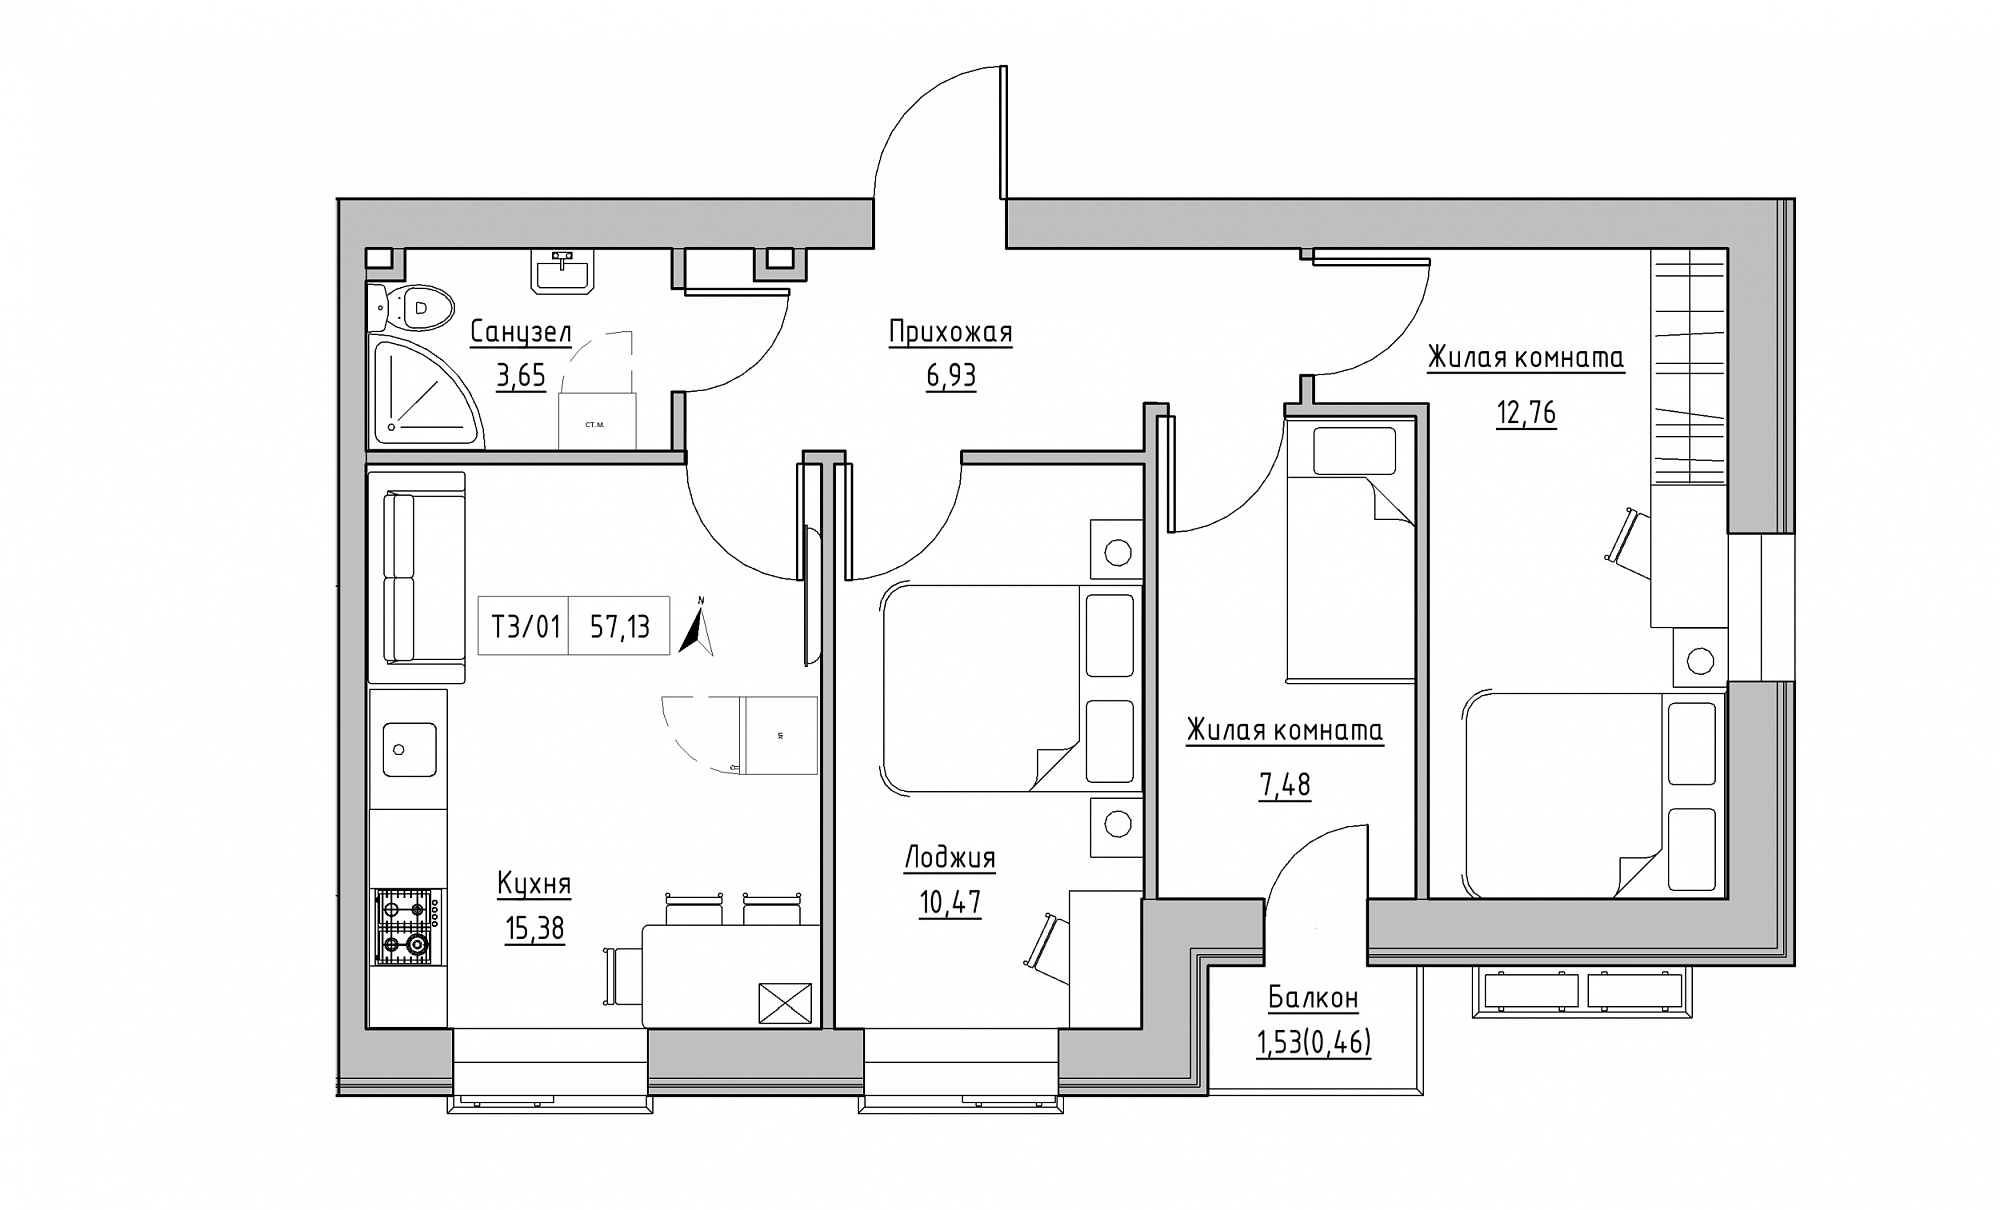 Планування 3-к квартира площею 57.13м2, KS-015-03/0008.